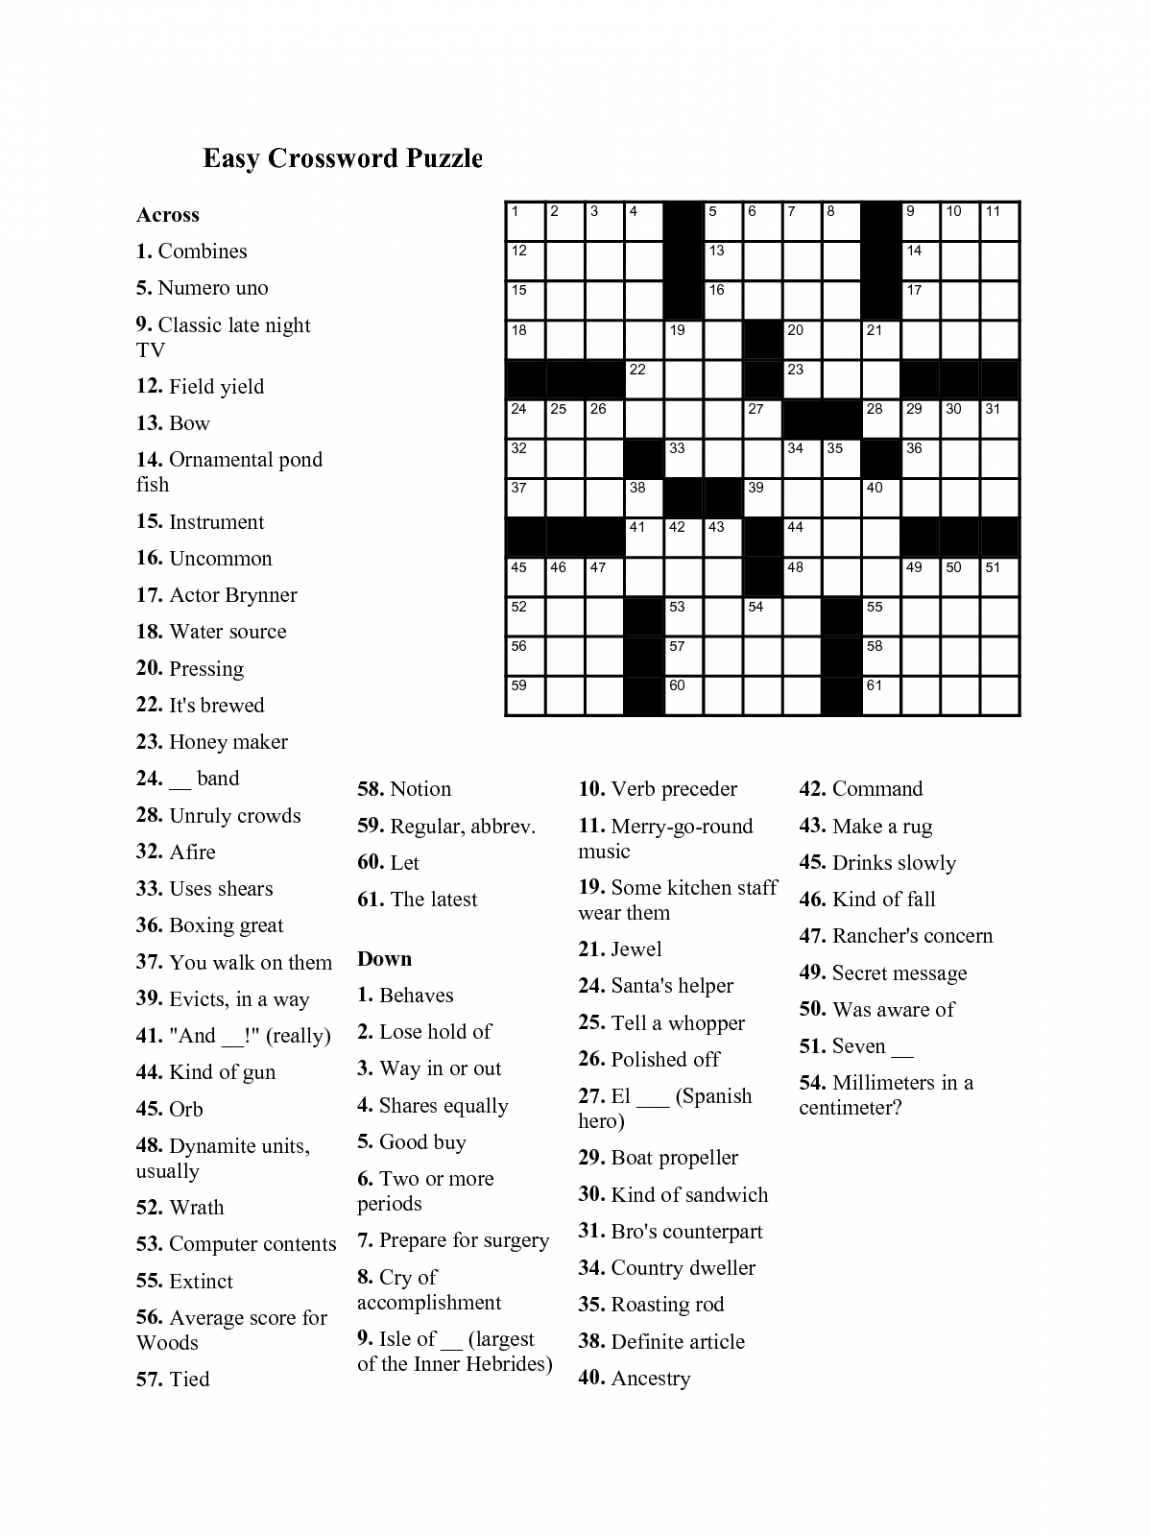 Fun Easy Crossword Puzzles For Seniors 101 Activity - Easy Free Crossword Puzzle